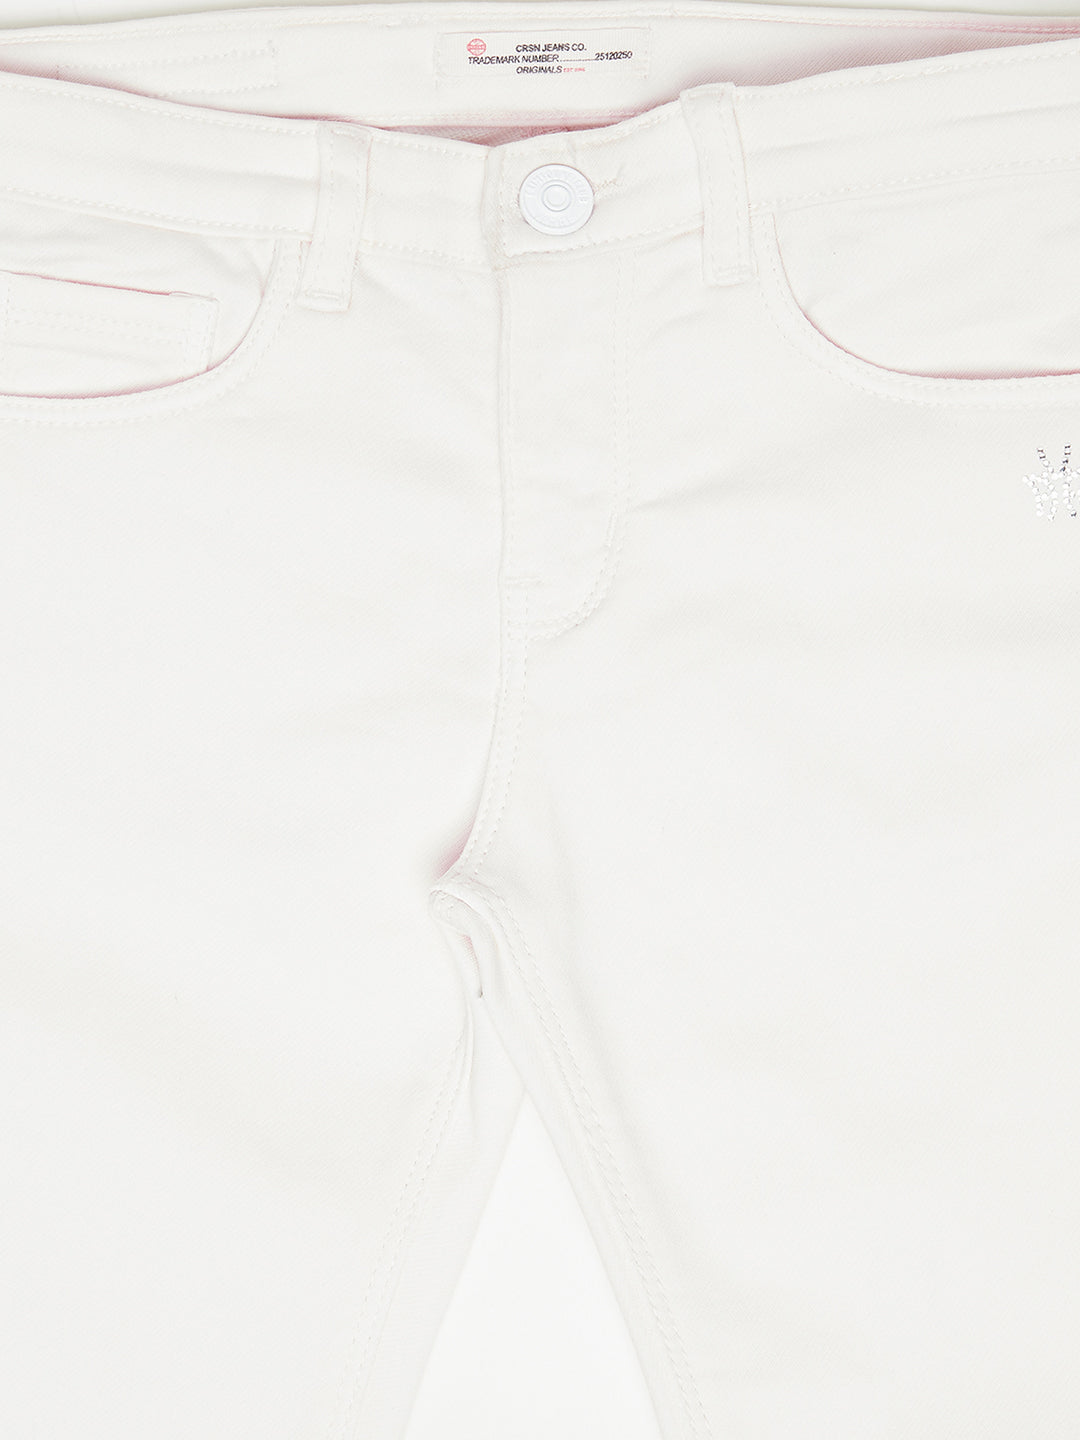 White Denim Jeans - Girls Jeans